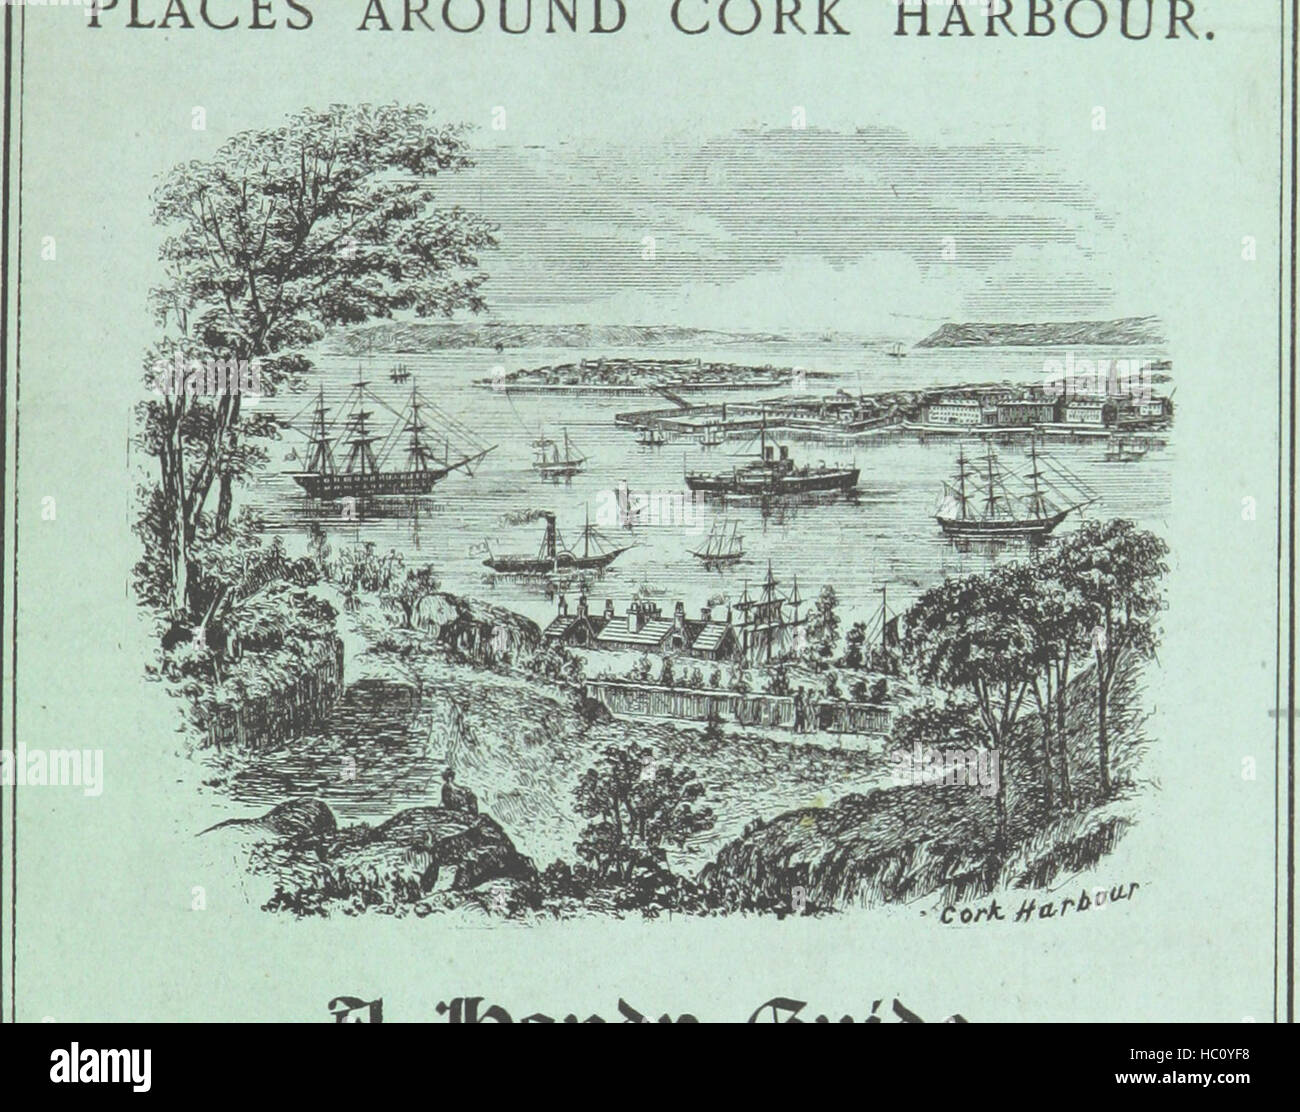 Immagine presa da pagina 3 di "Queenstown e i luoghi intorno al porto di Cork. Una comoda guida, etc' immagine presa da pagina 3 di "Queenstown e luoghi Foto Stock